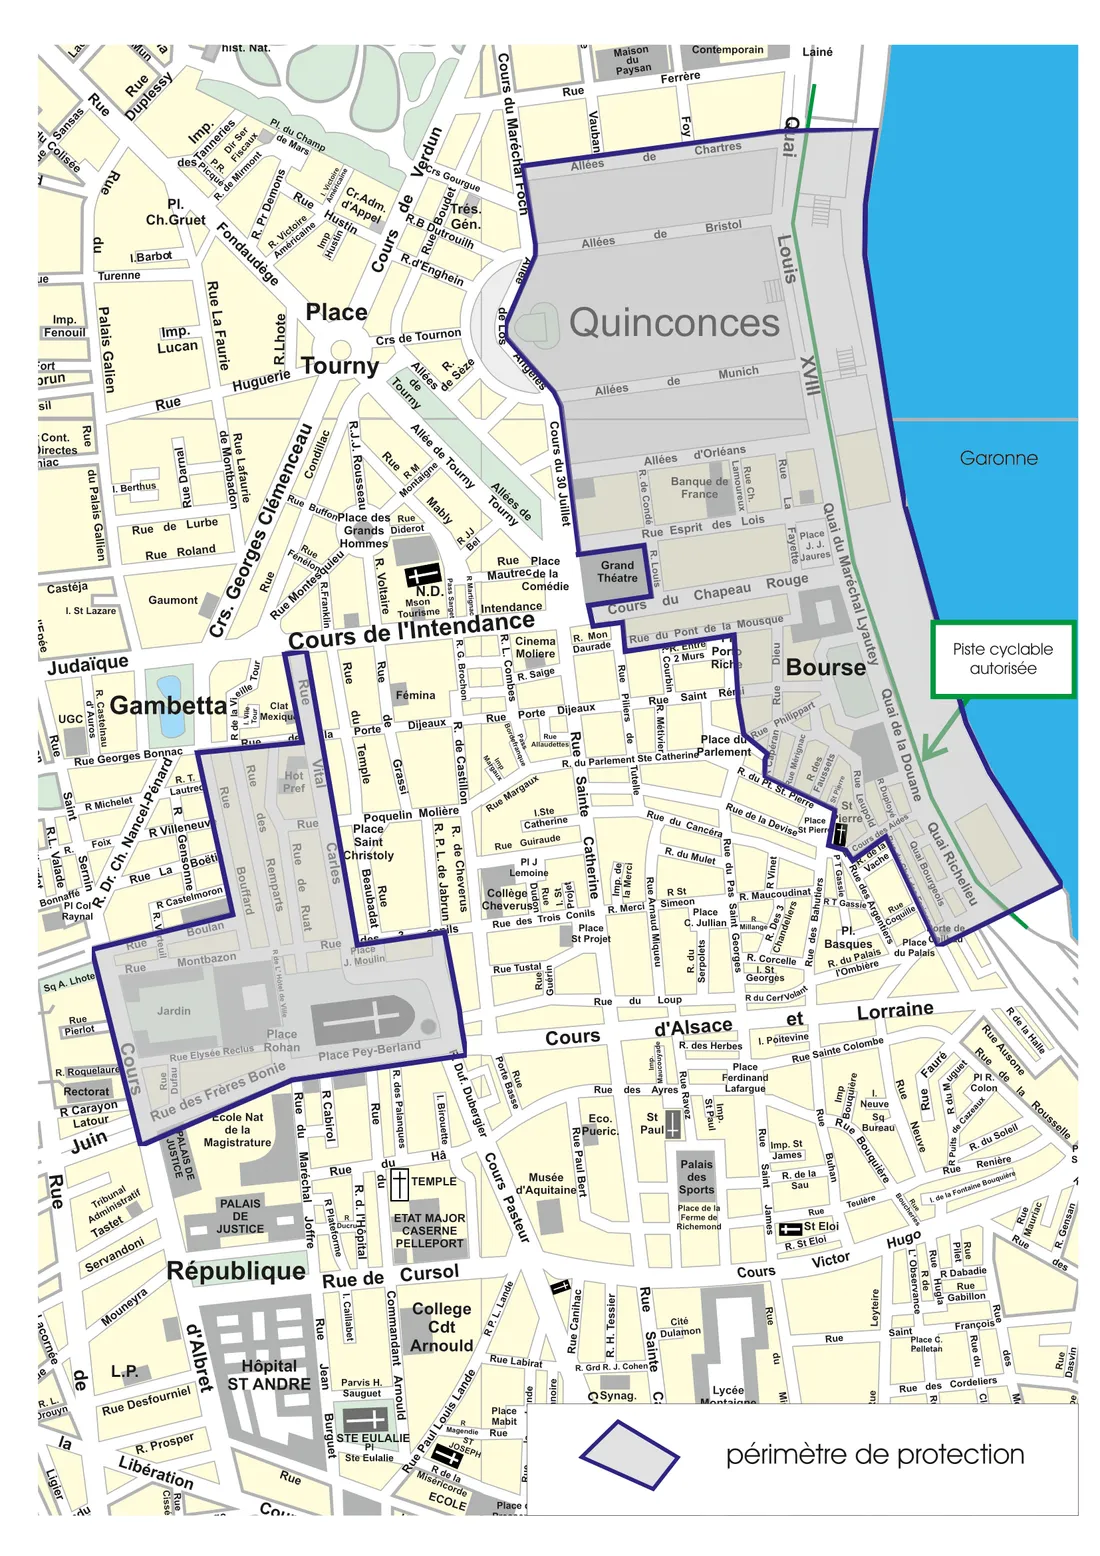 Les zones de restrictions pour la visite de Charles III à Bordeaux